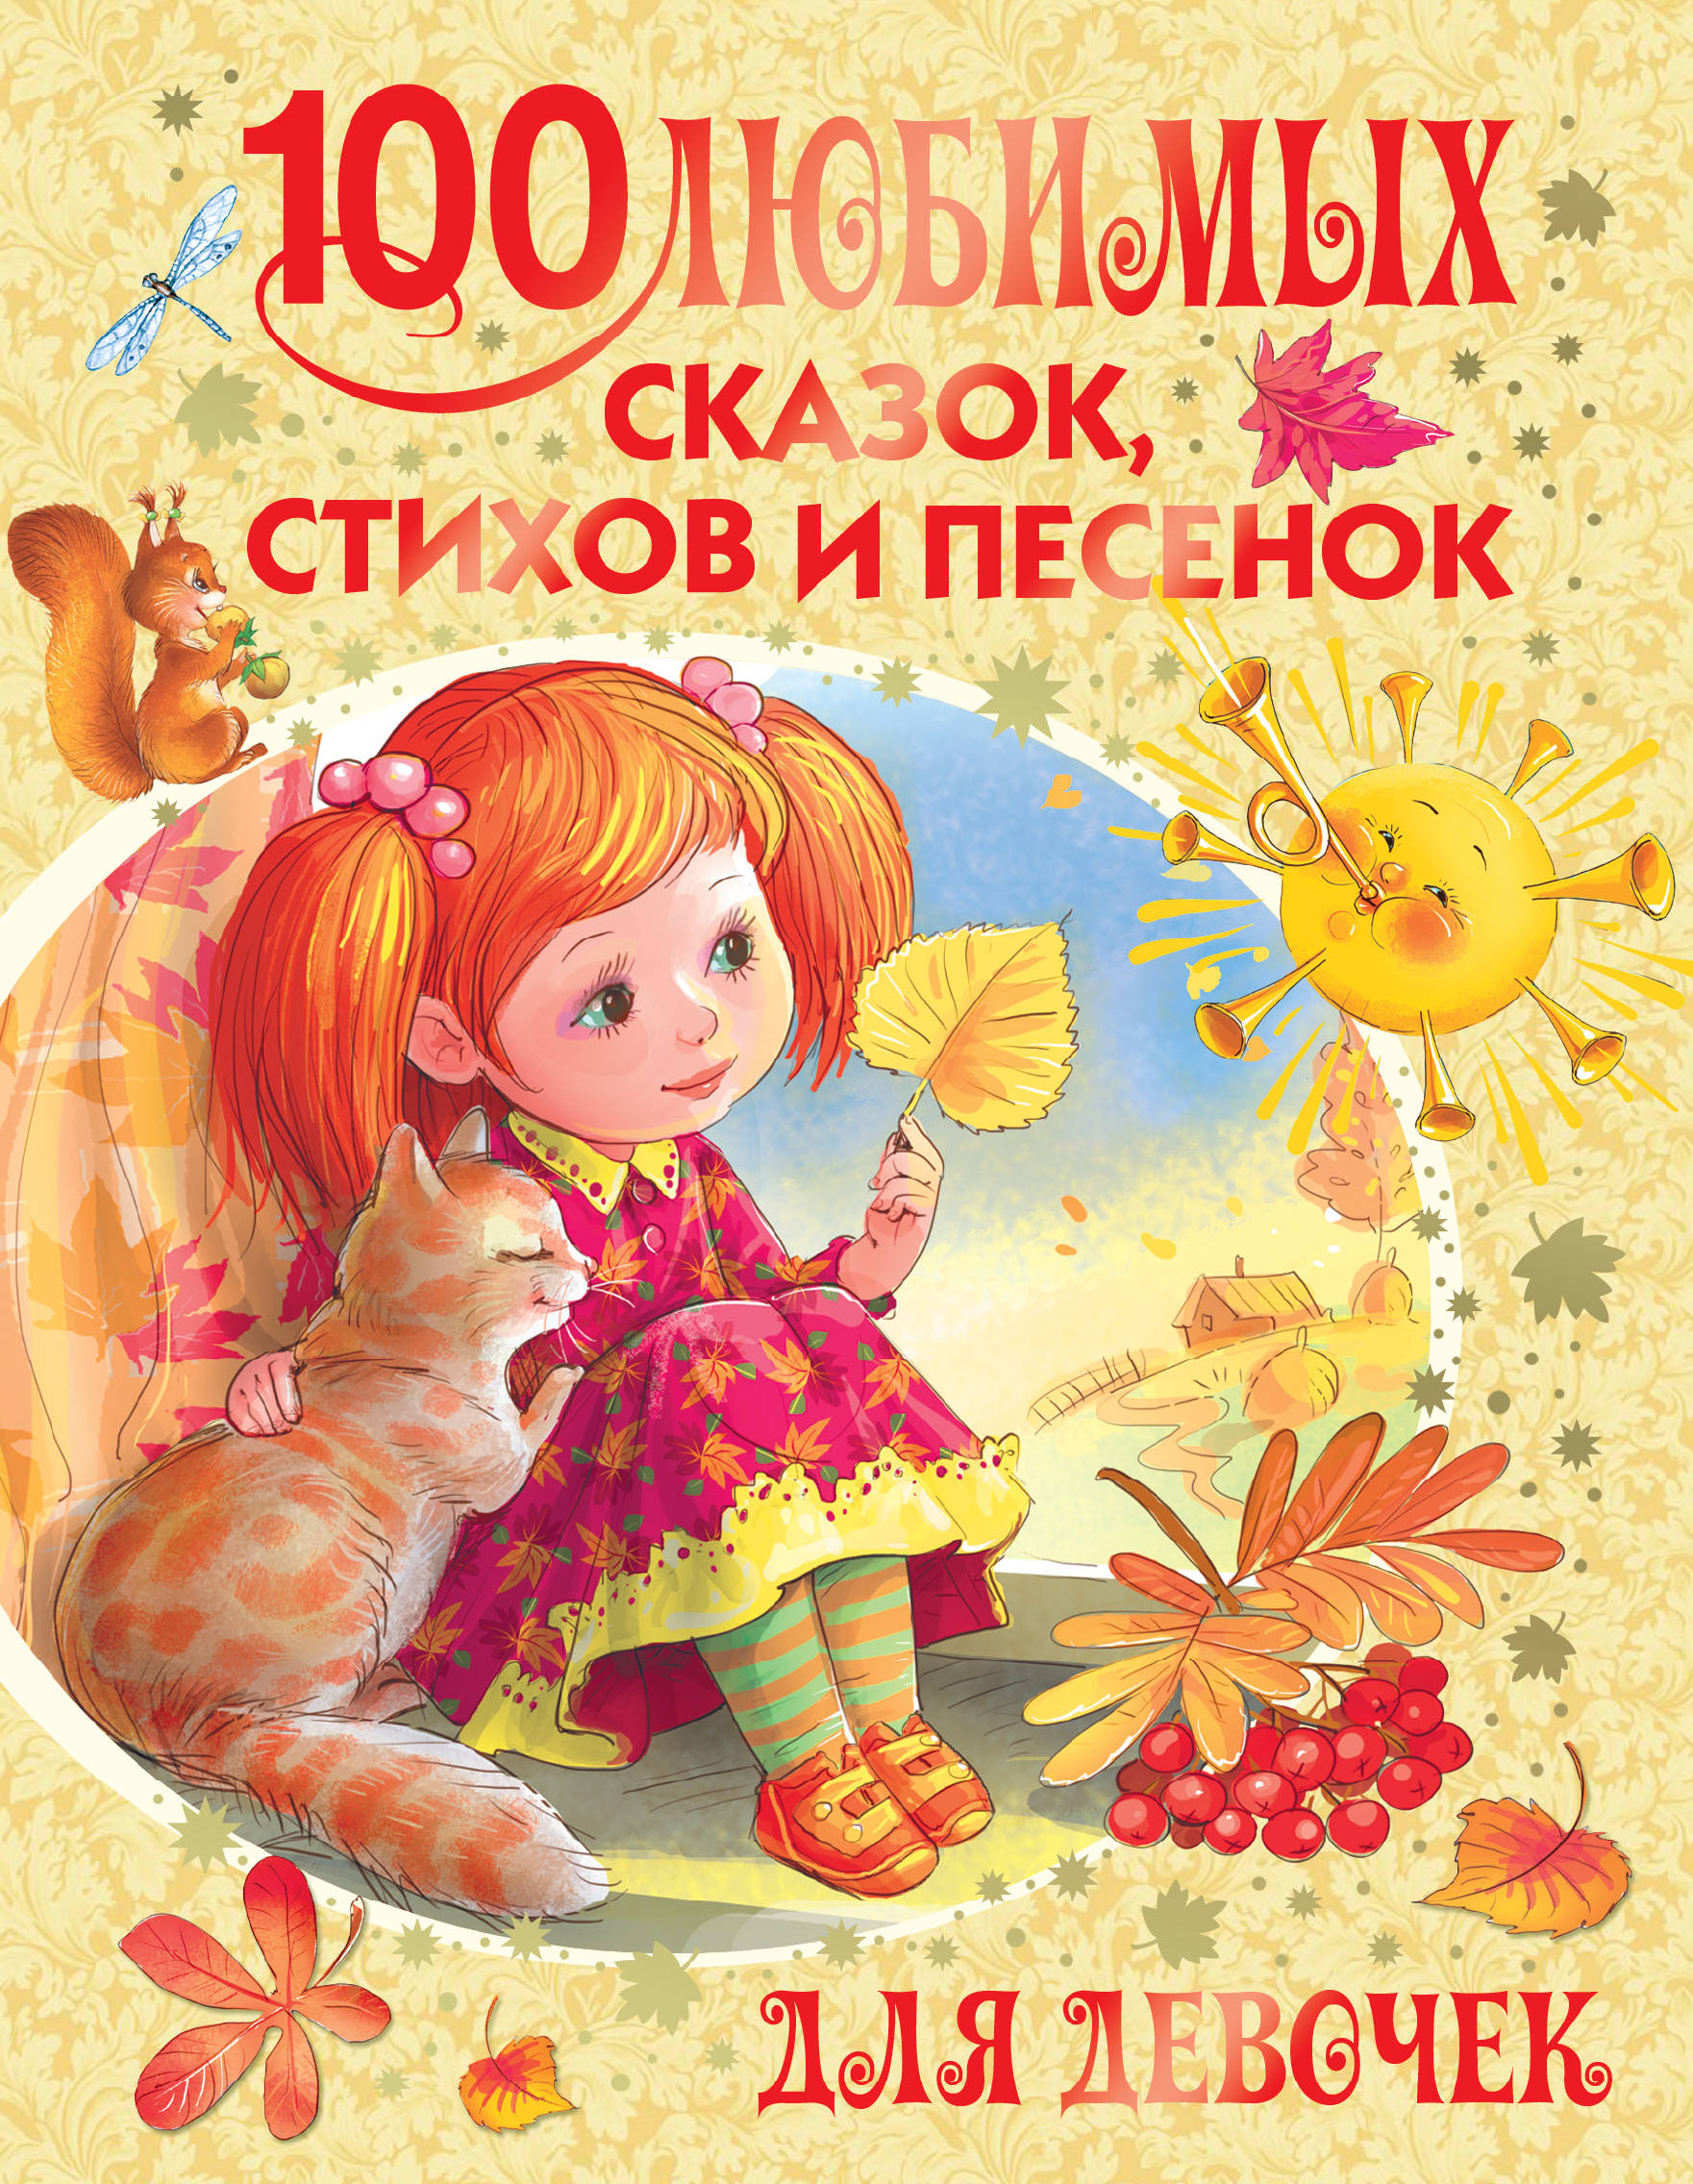 100 любимых сказок, стихов и песенок для девочек дмитриева в 100 любимых сказок 100 любимых стихов и загадок